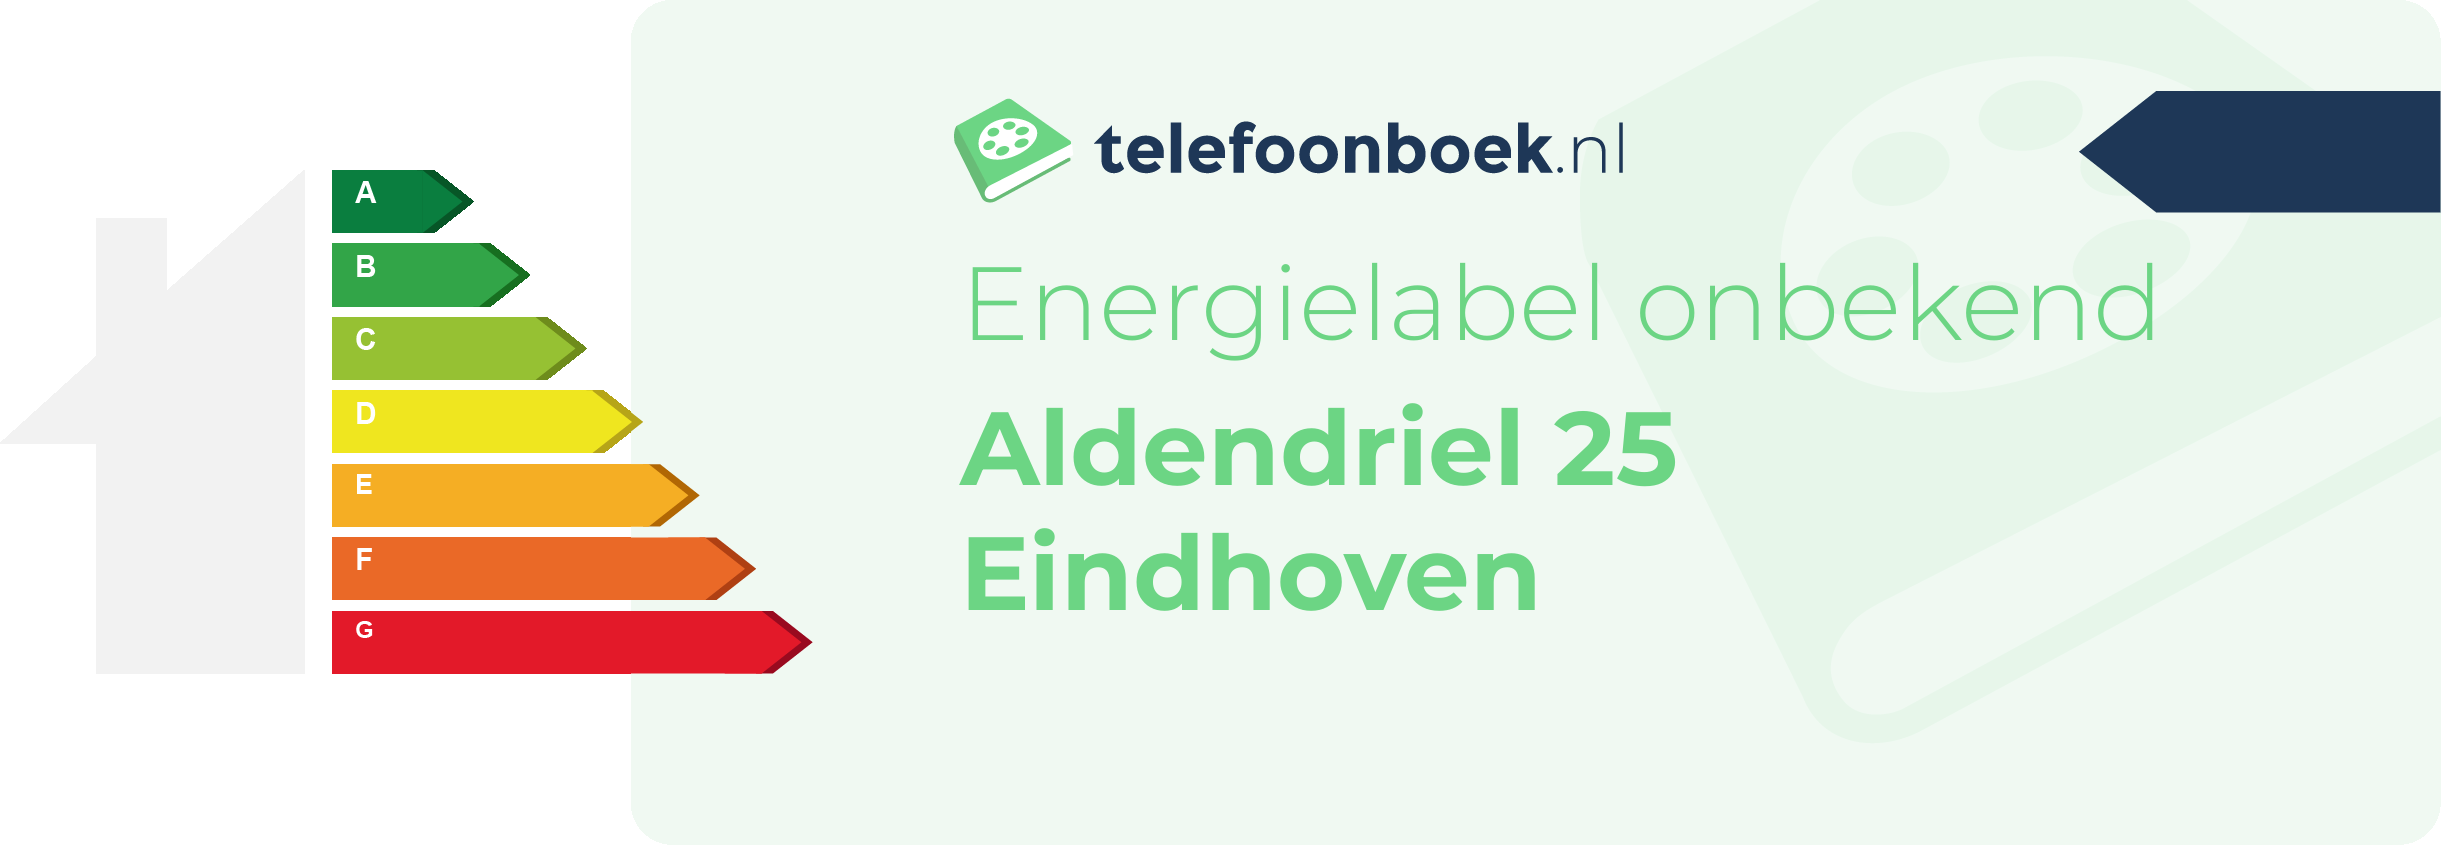 Energielabel Aldendriel 25 Eindhoven